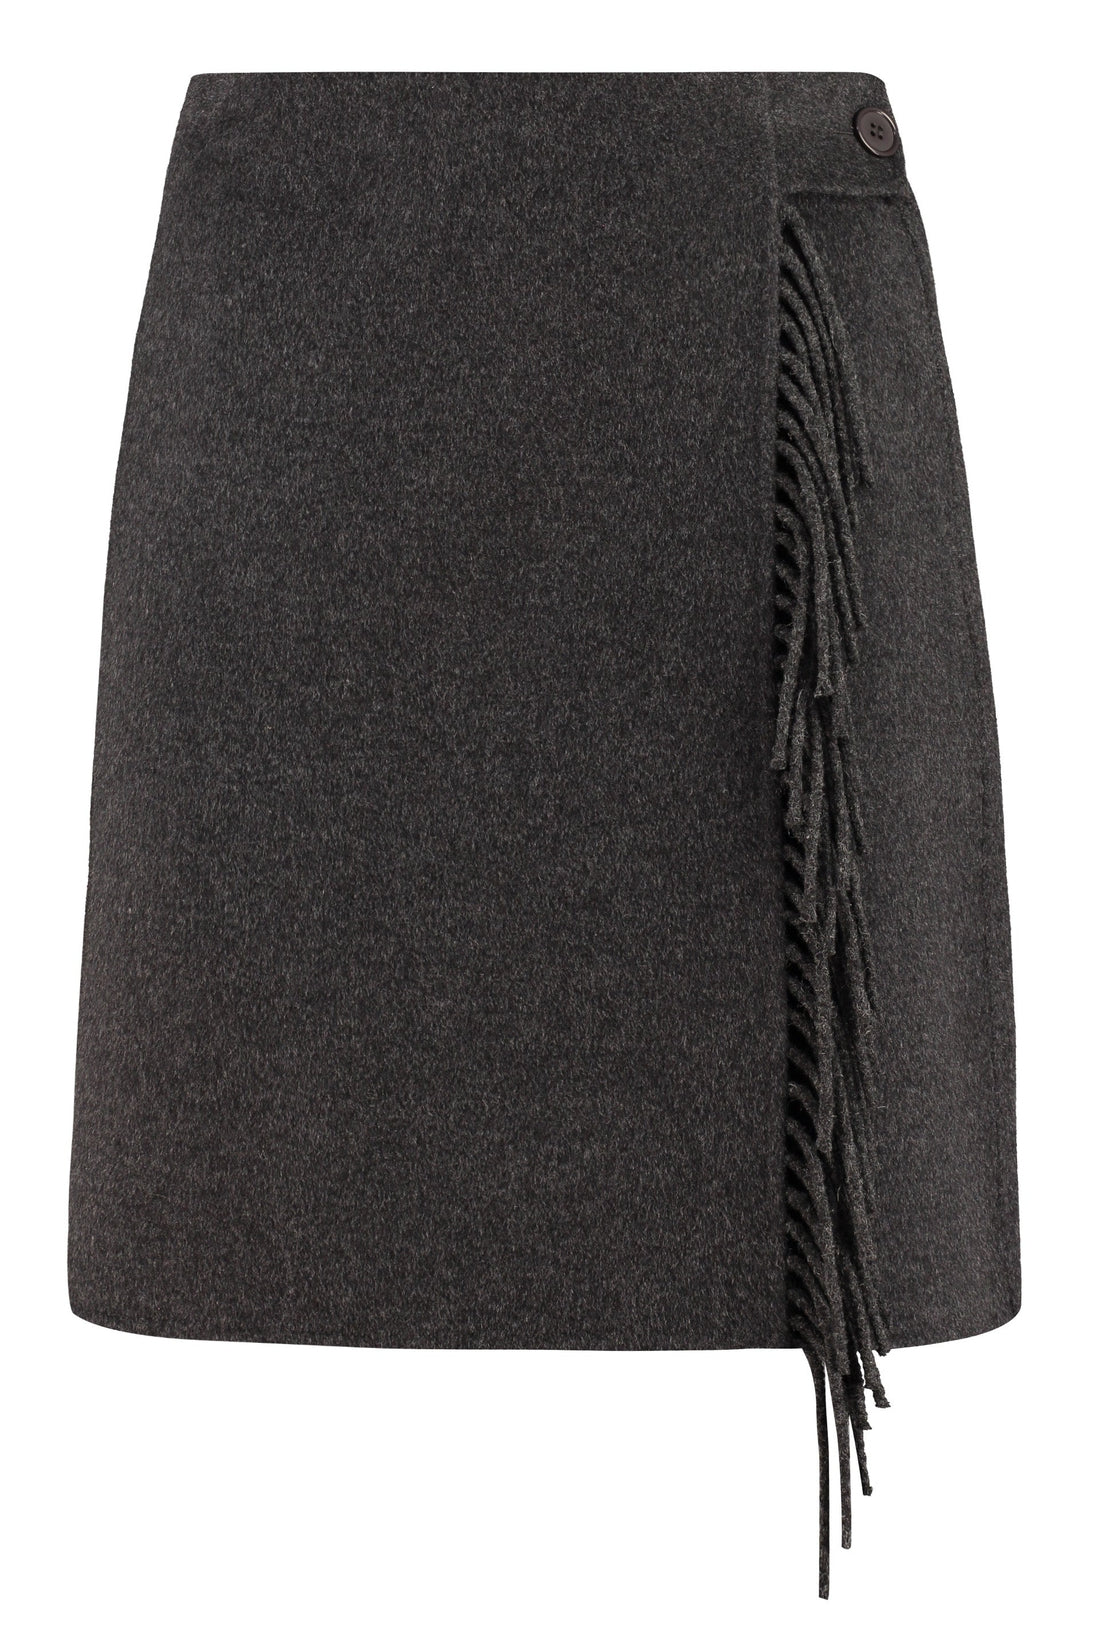 Parosh-OUTLET-SALE-Wool wrap skirt-ARCHIVIST